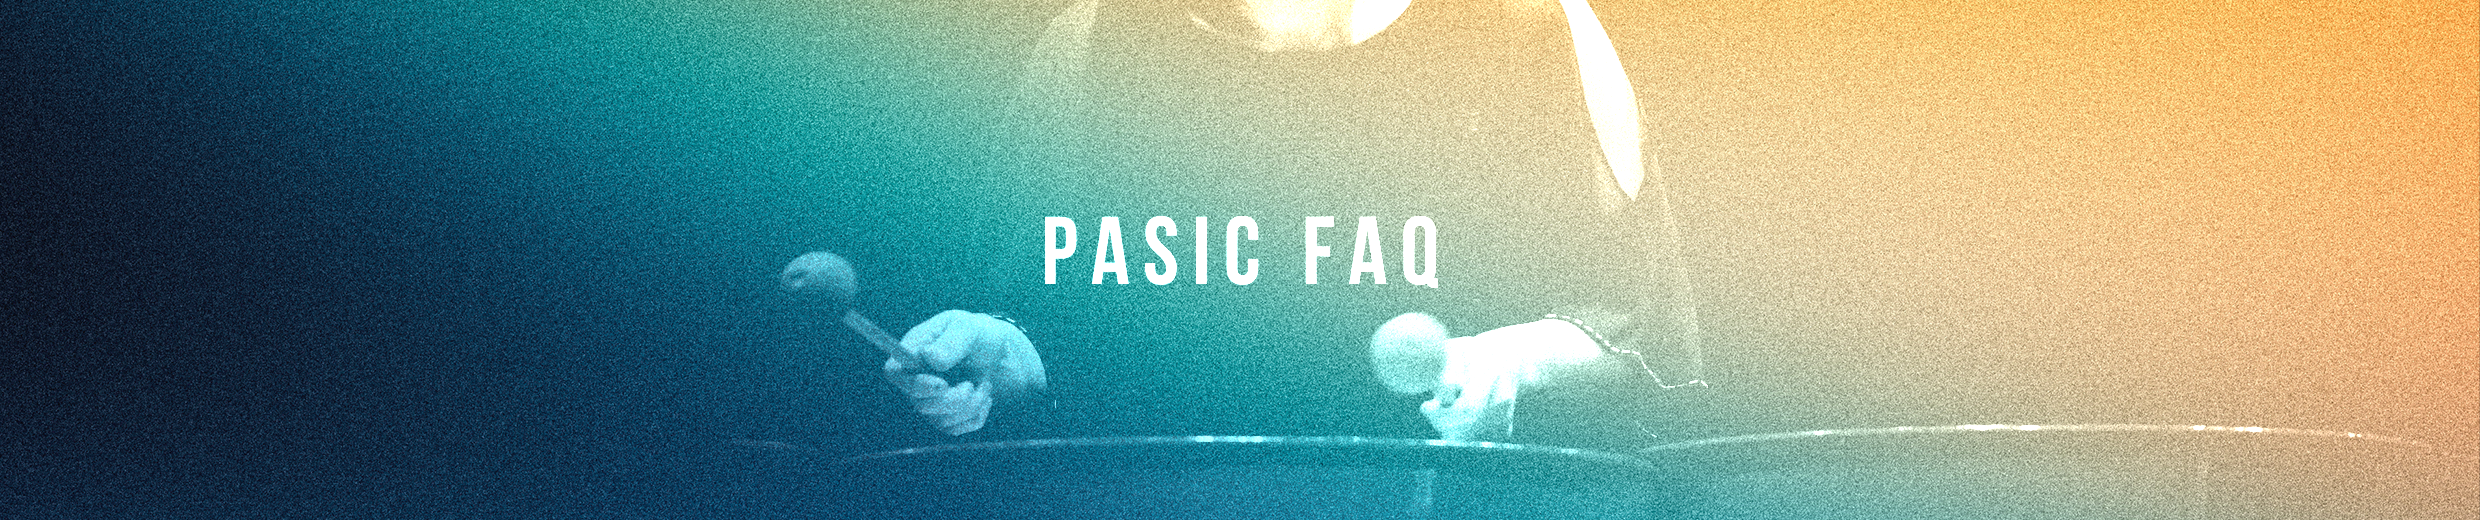 PASIC FAQ header image